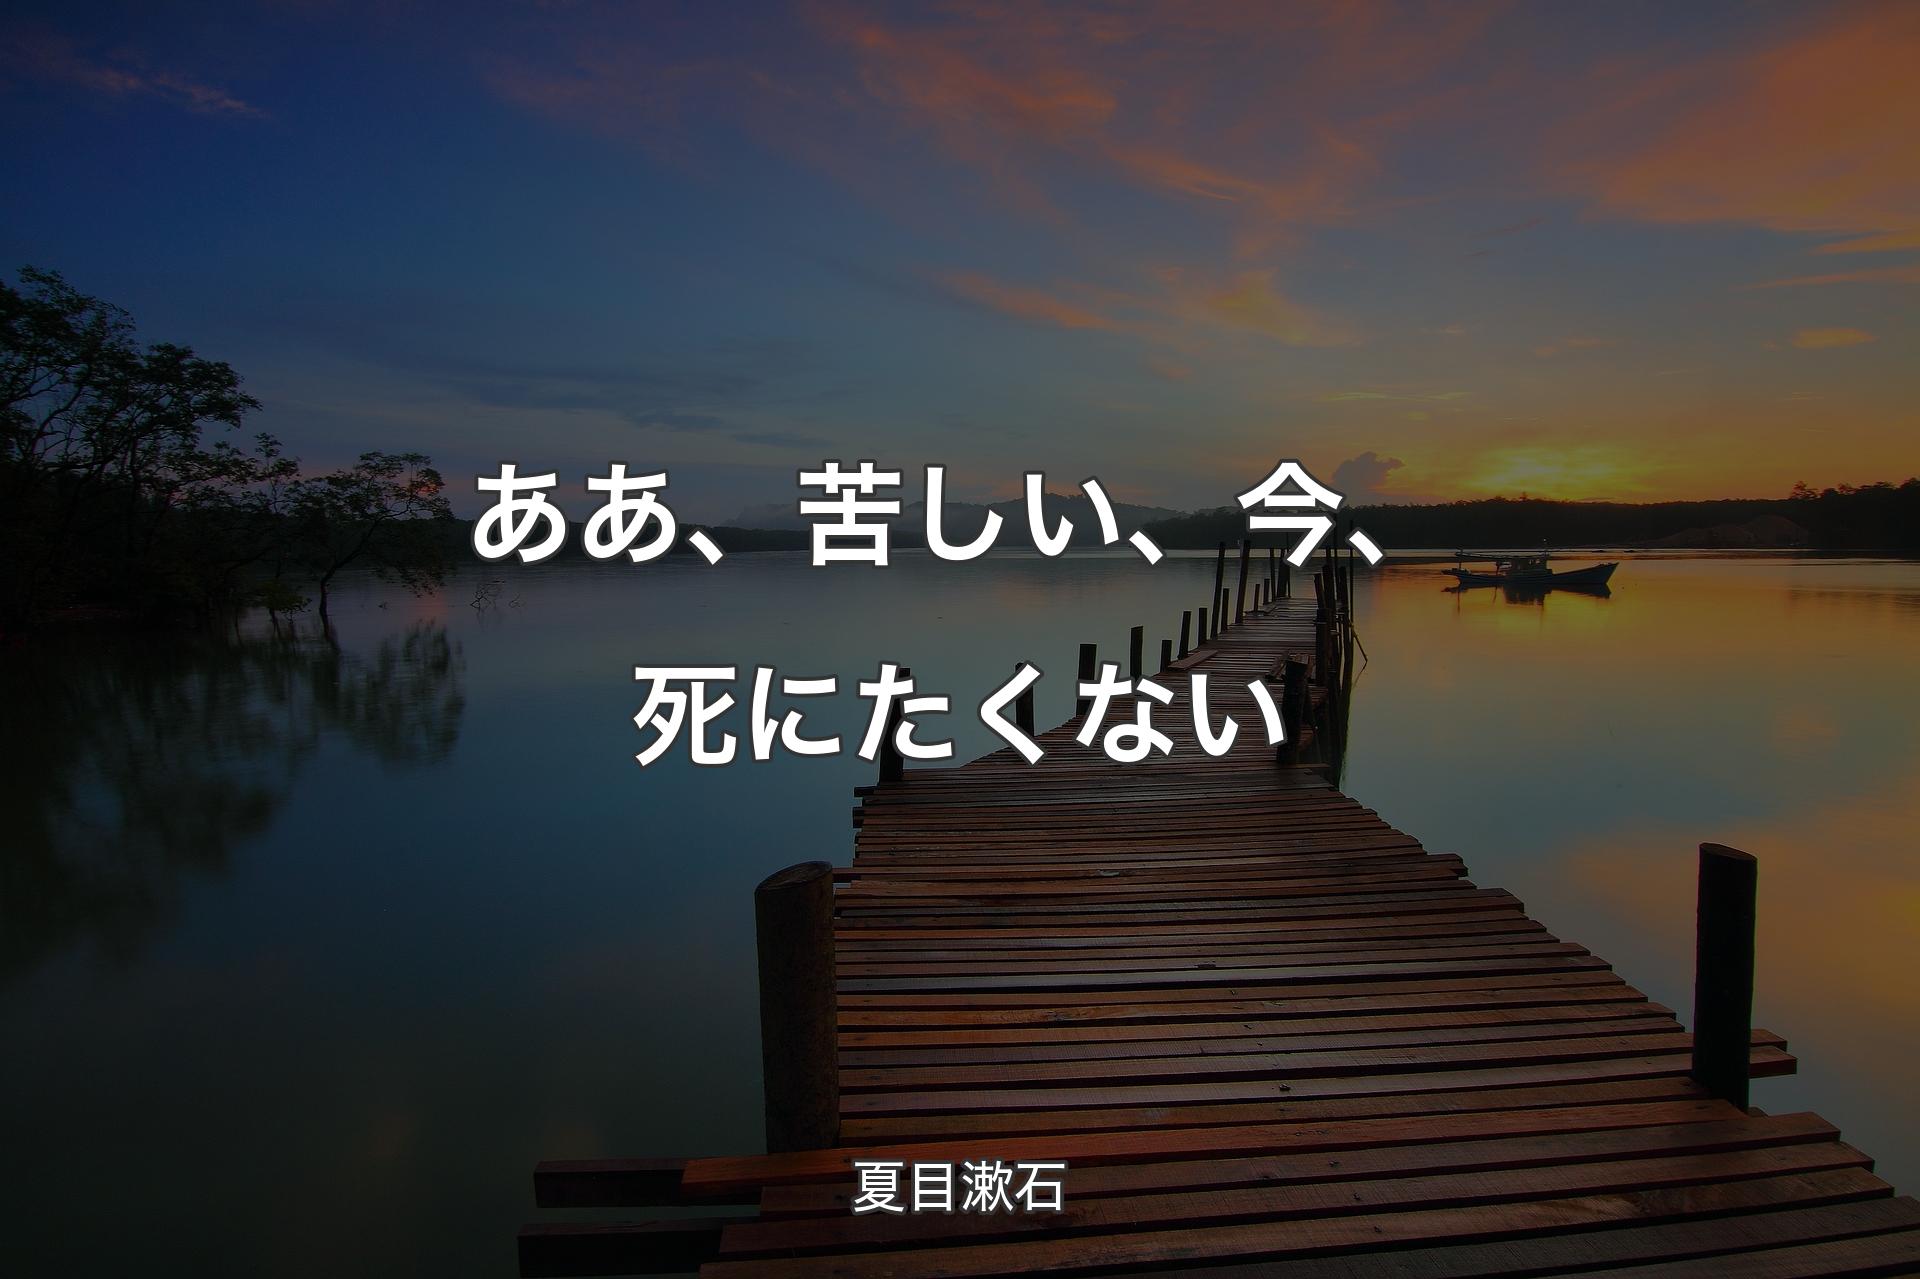 【背景3】ああ、苦しい、今、死にたくない - 夏目漱石